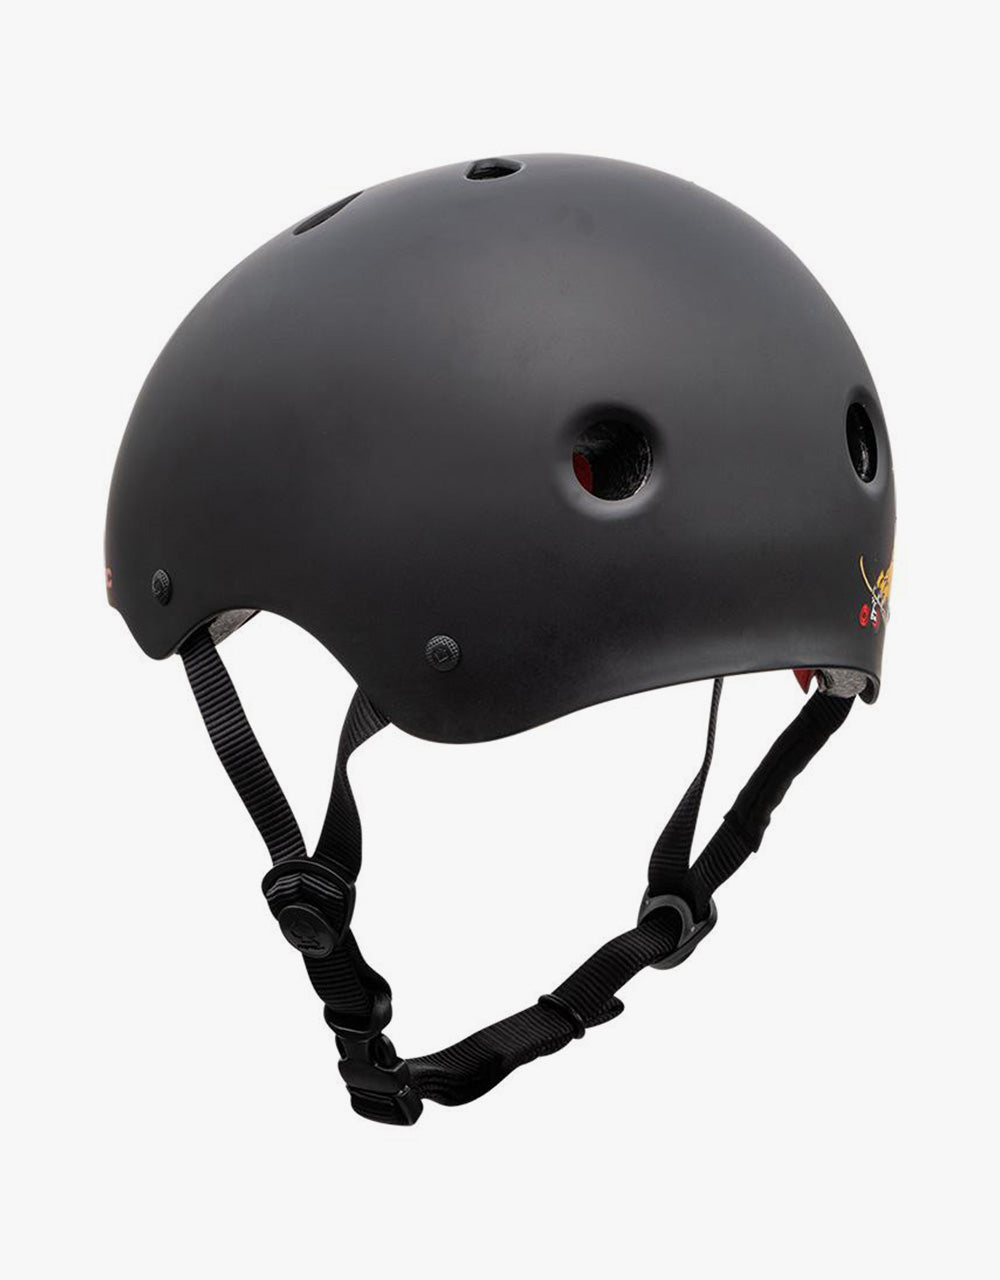 Pro Tec Classic Cab Dragon Helmet - Black